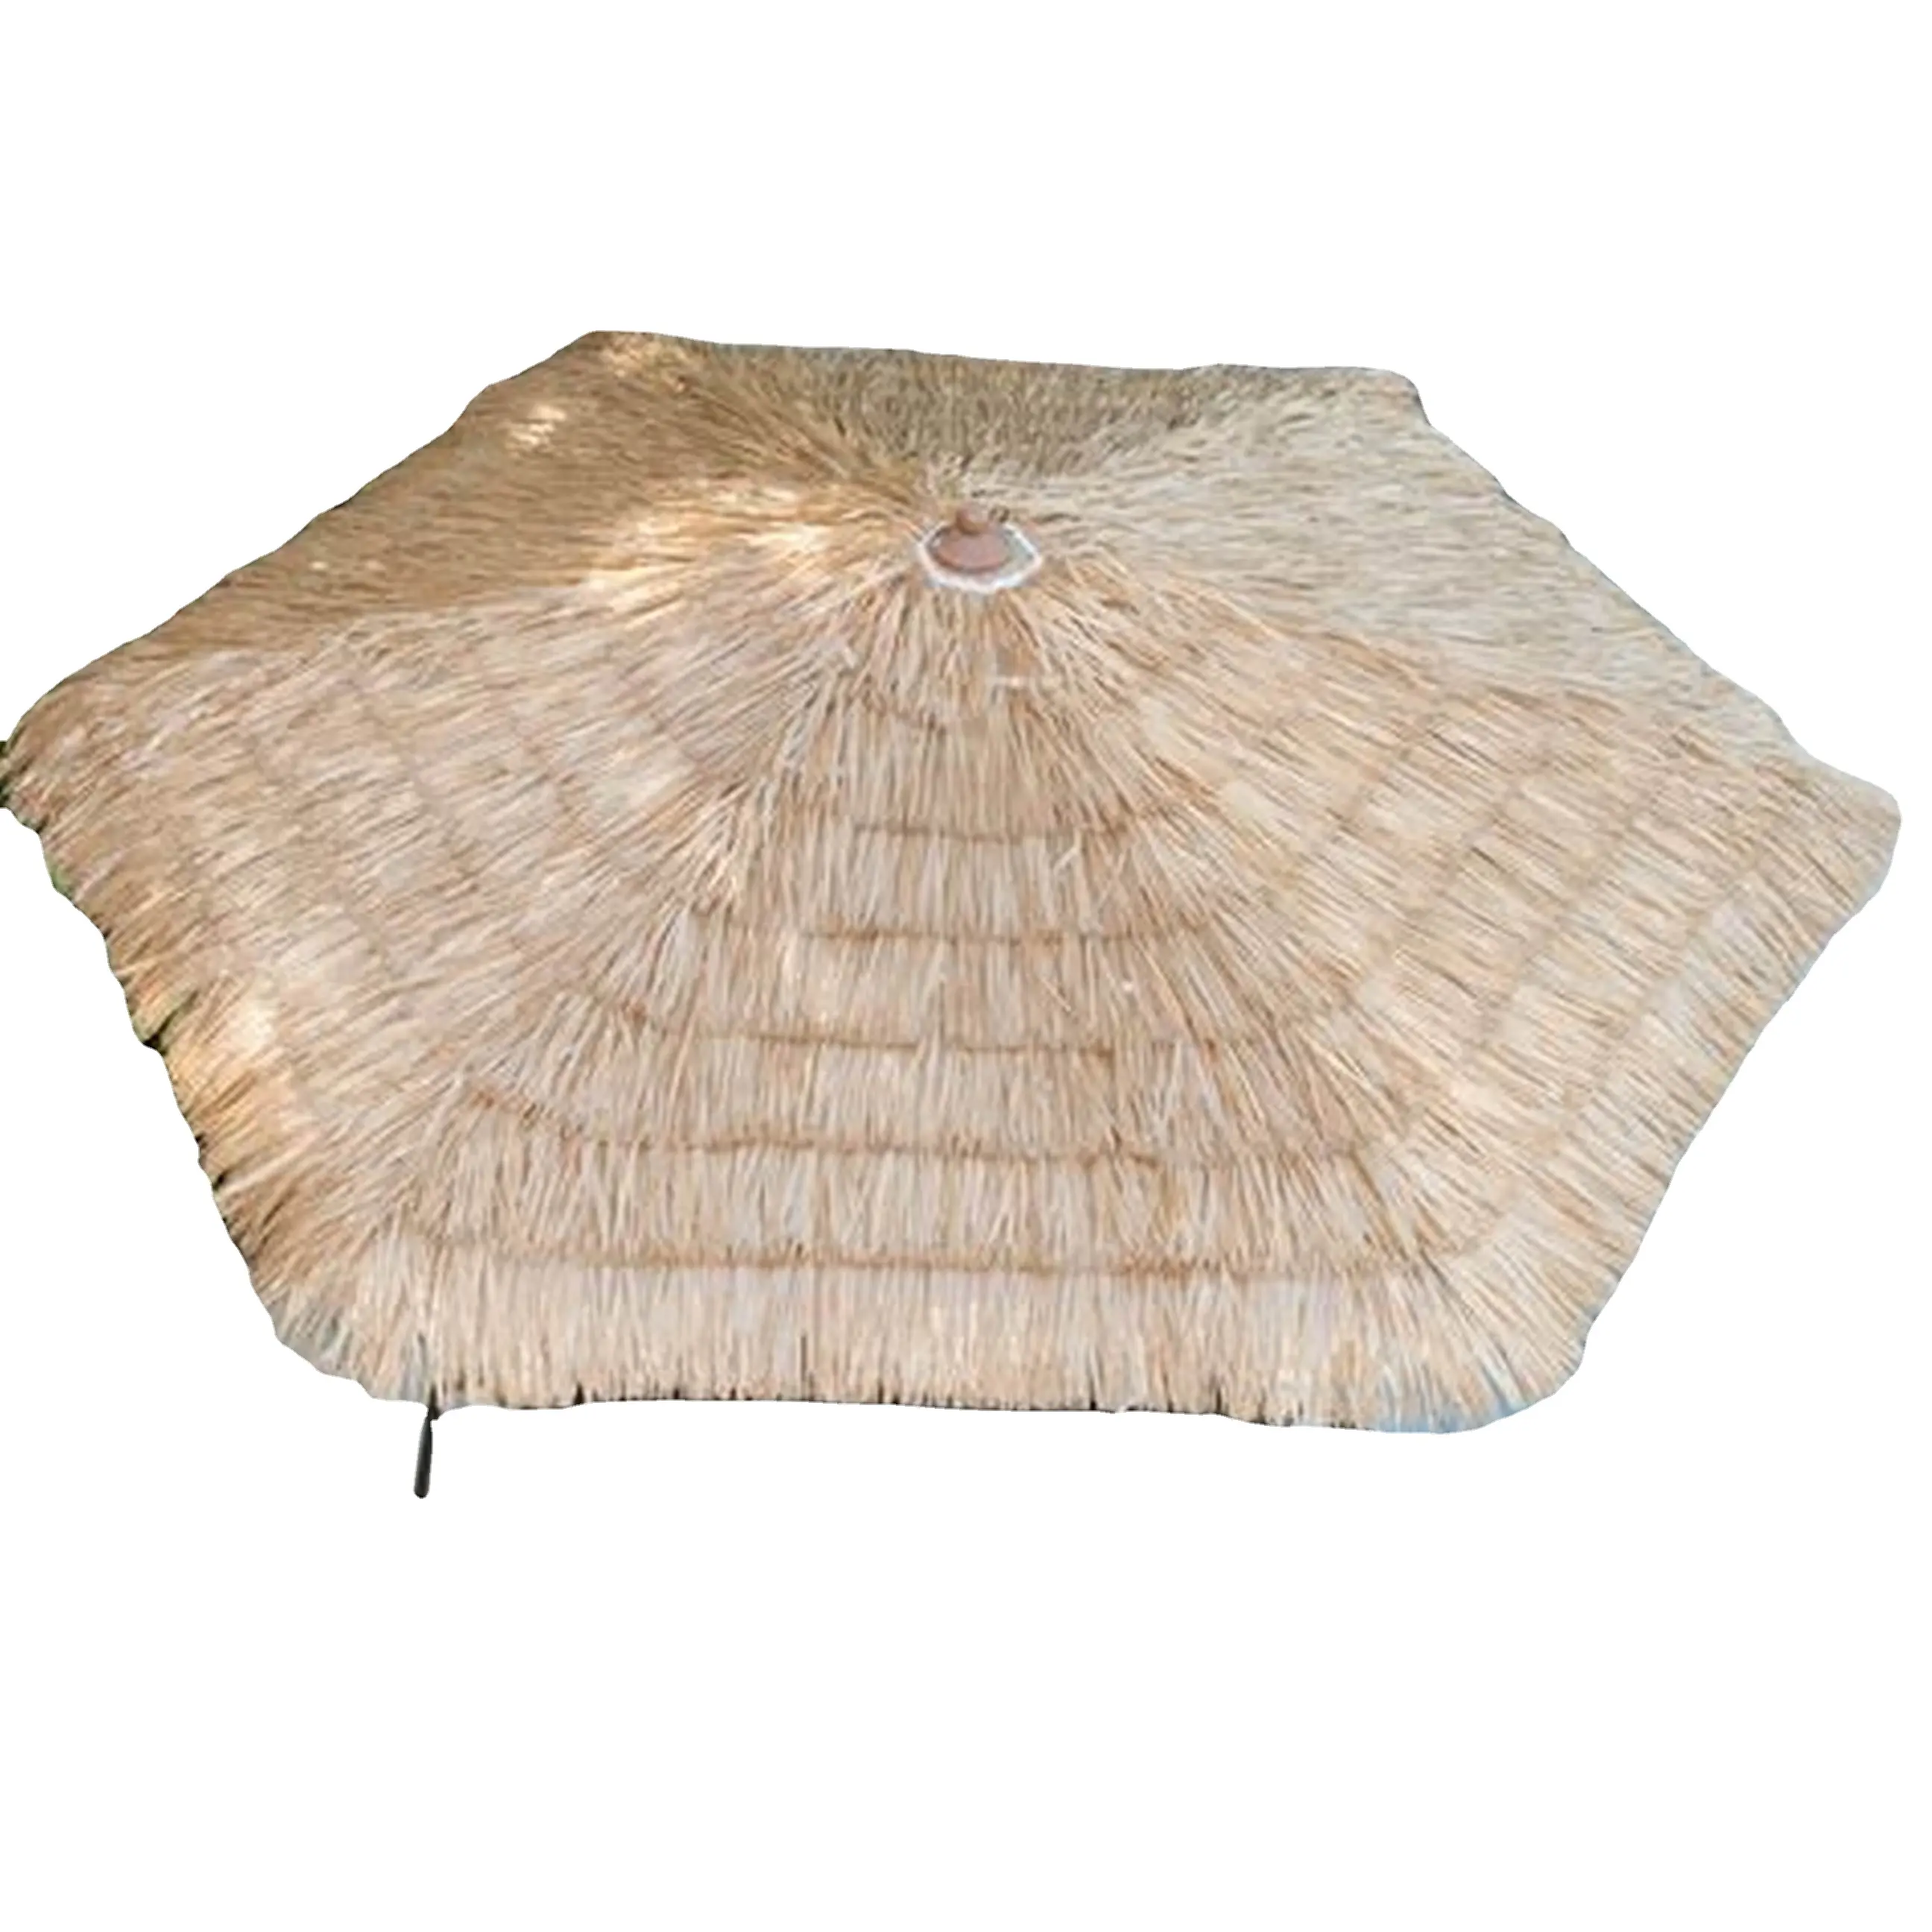 トロピカルパームリーフ傘-カバー付きのわらぶき屋根のパティオ傘-海草傘